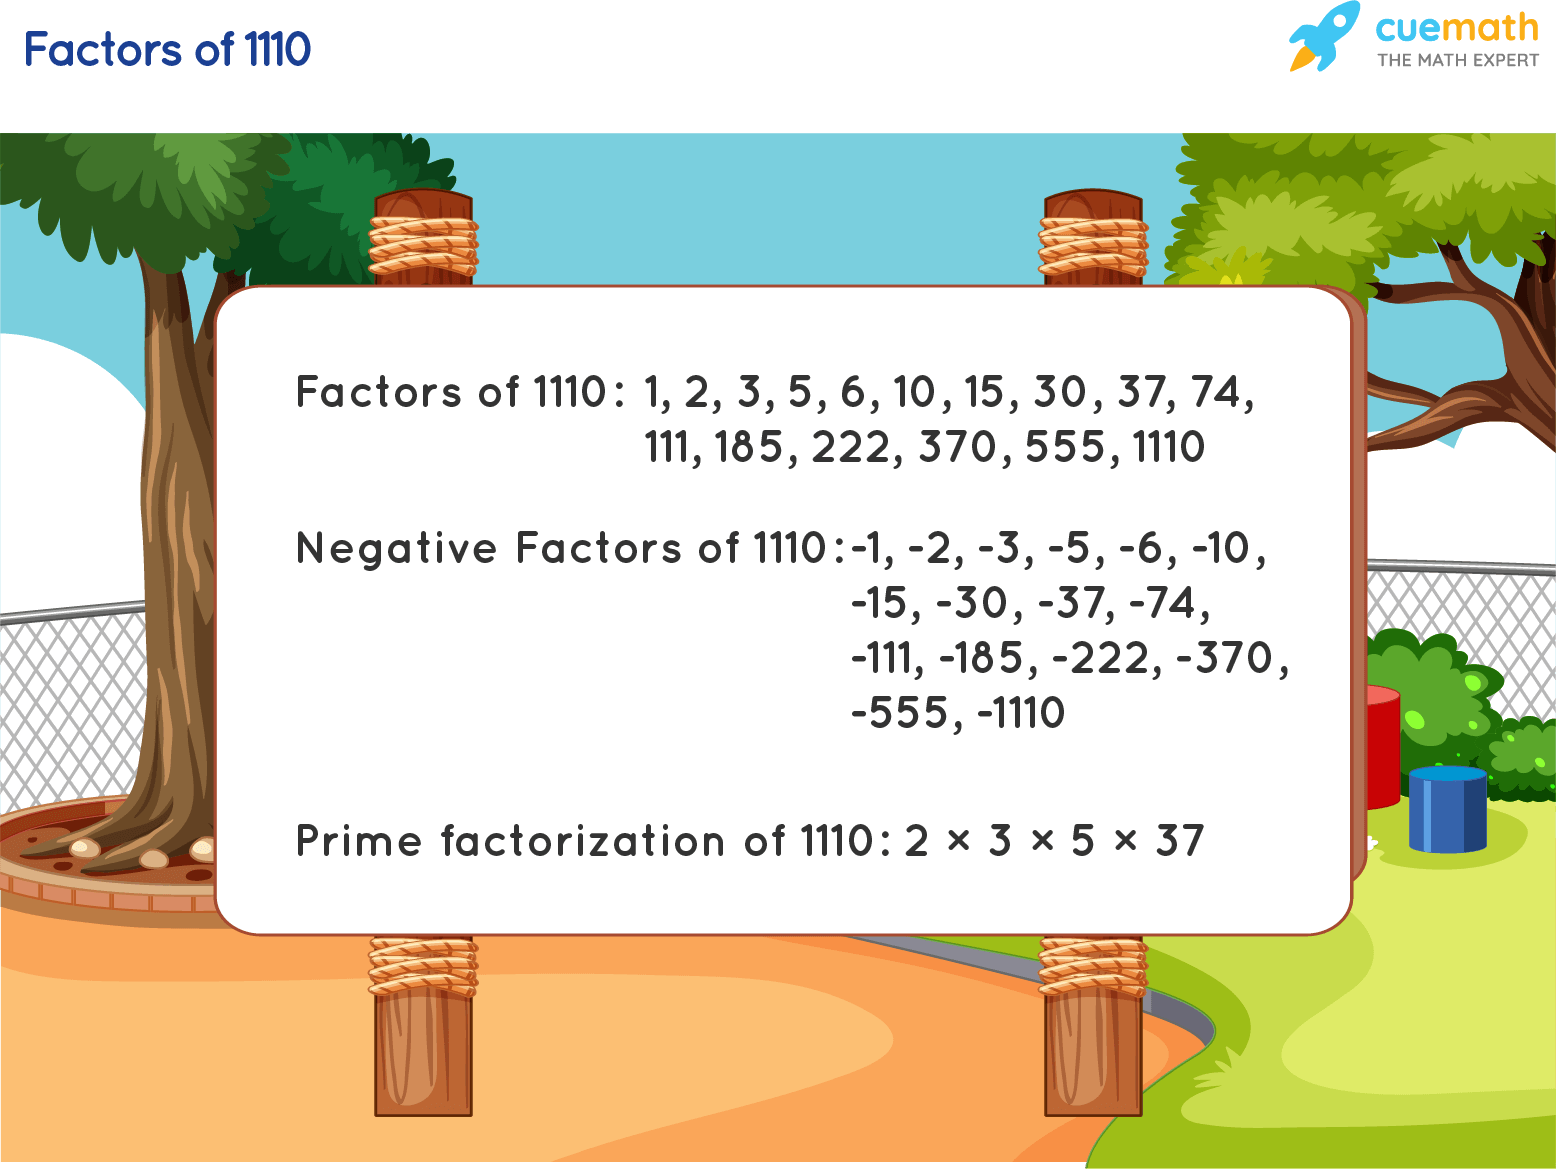 Factors of 1110